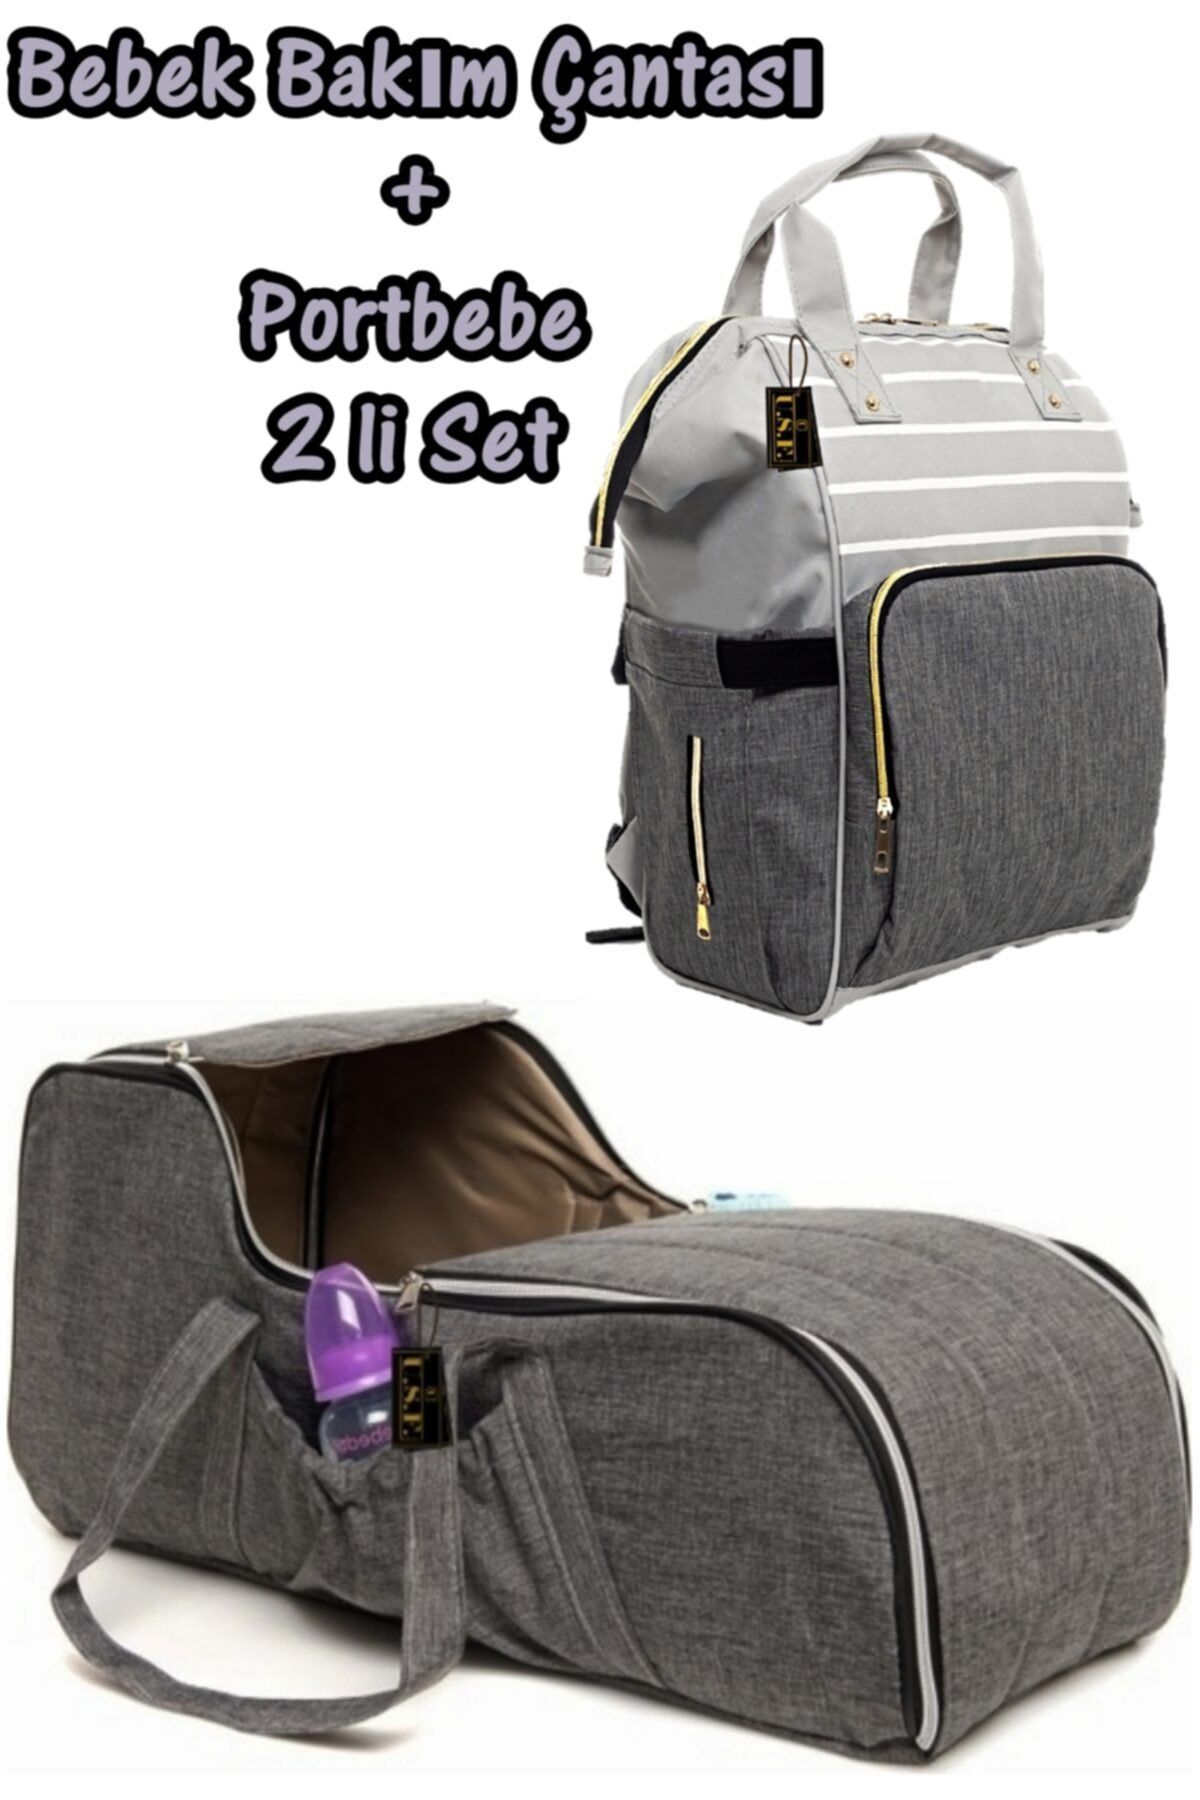 USF Portbebe Ana Kucağı Puset Bebek Taşıma Anne Bebek Bakım Çantası 2 Li Set